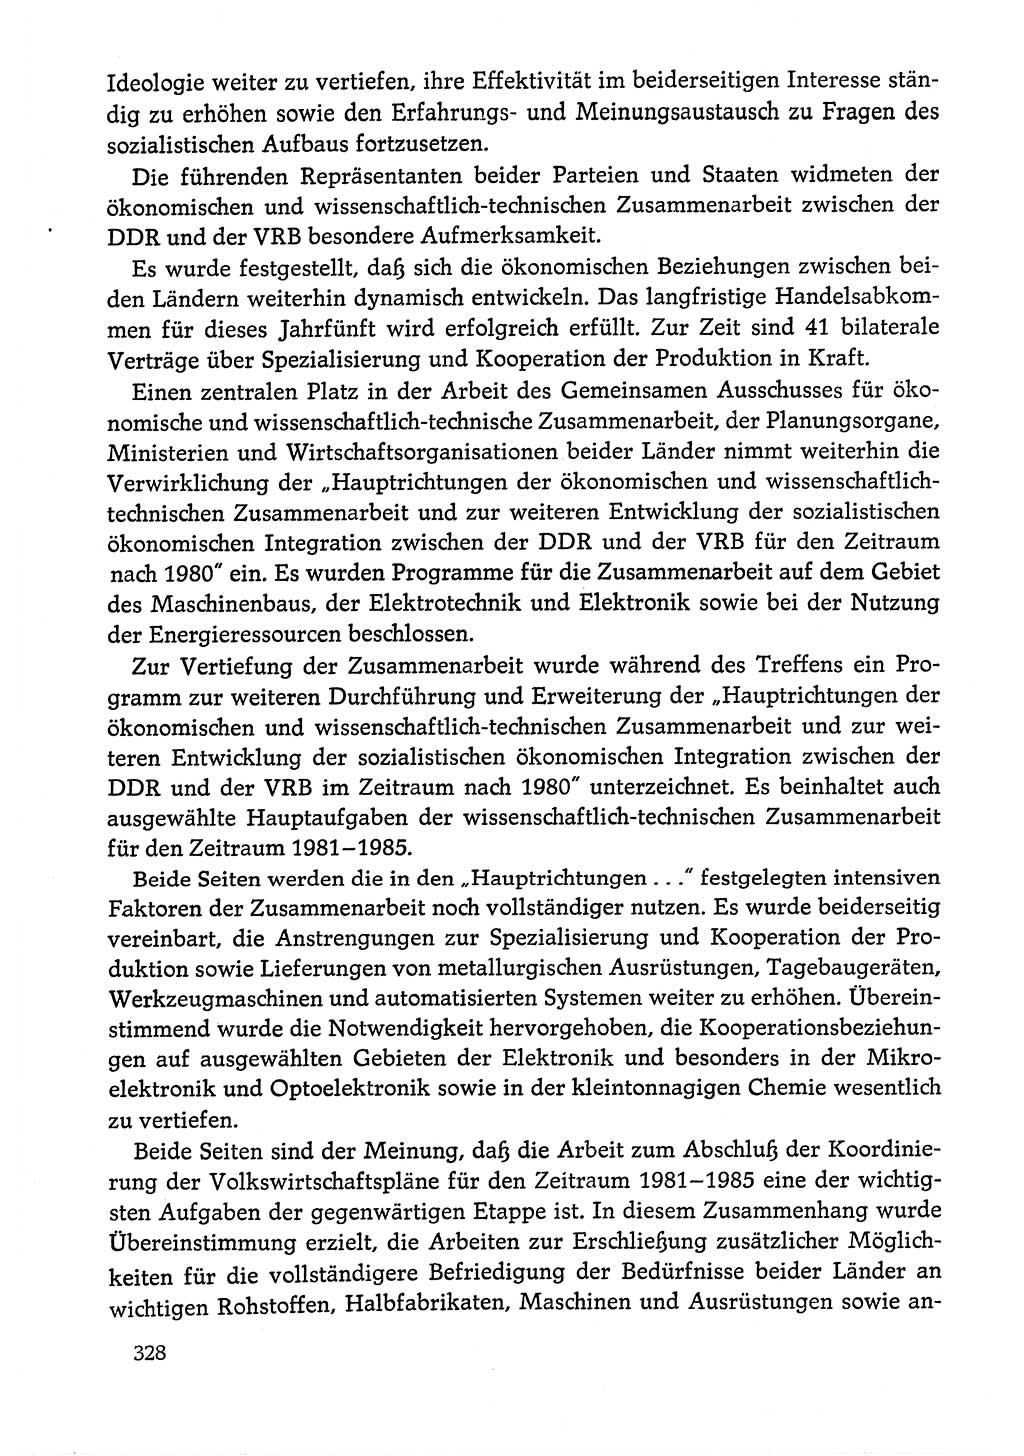 Dokumente der Sozialistischen Einheitspartei Deutschlands (SED) [Deutsche Demokratische Republik (DDR)] 1978-1979, Seite 328 (Dok. SED DDR 1978-1979, S. 328)